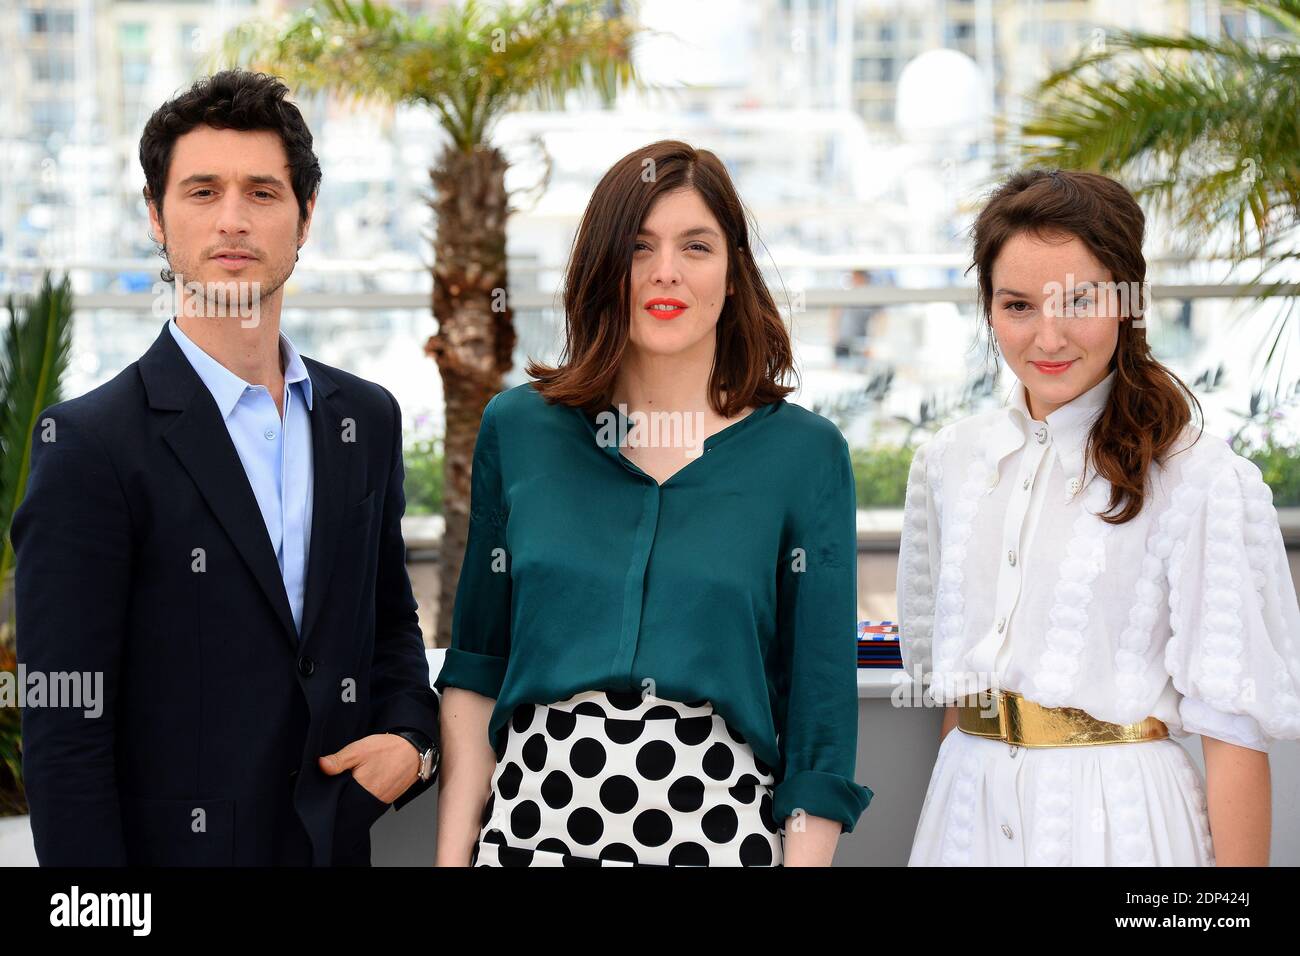 Jeremie Elkaim, Valerie Donzelli et Anais Demoustier posant au photocall pour le film Marguerite et Julien dans le cadre du 68e Festival de Cannes, le 19 mai 2015. Photo de Nicolas Briquet/ABACAPRESS.COM Banque D'Images